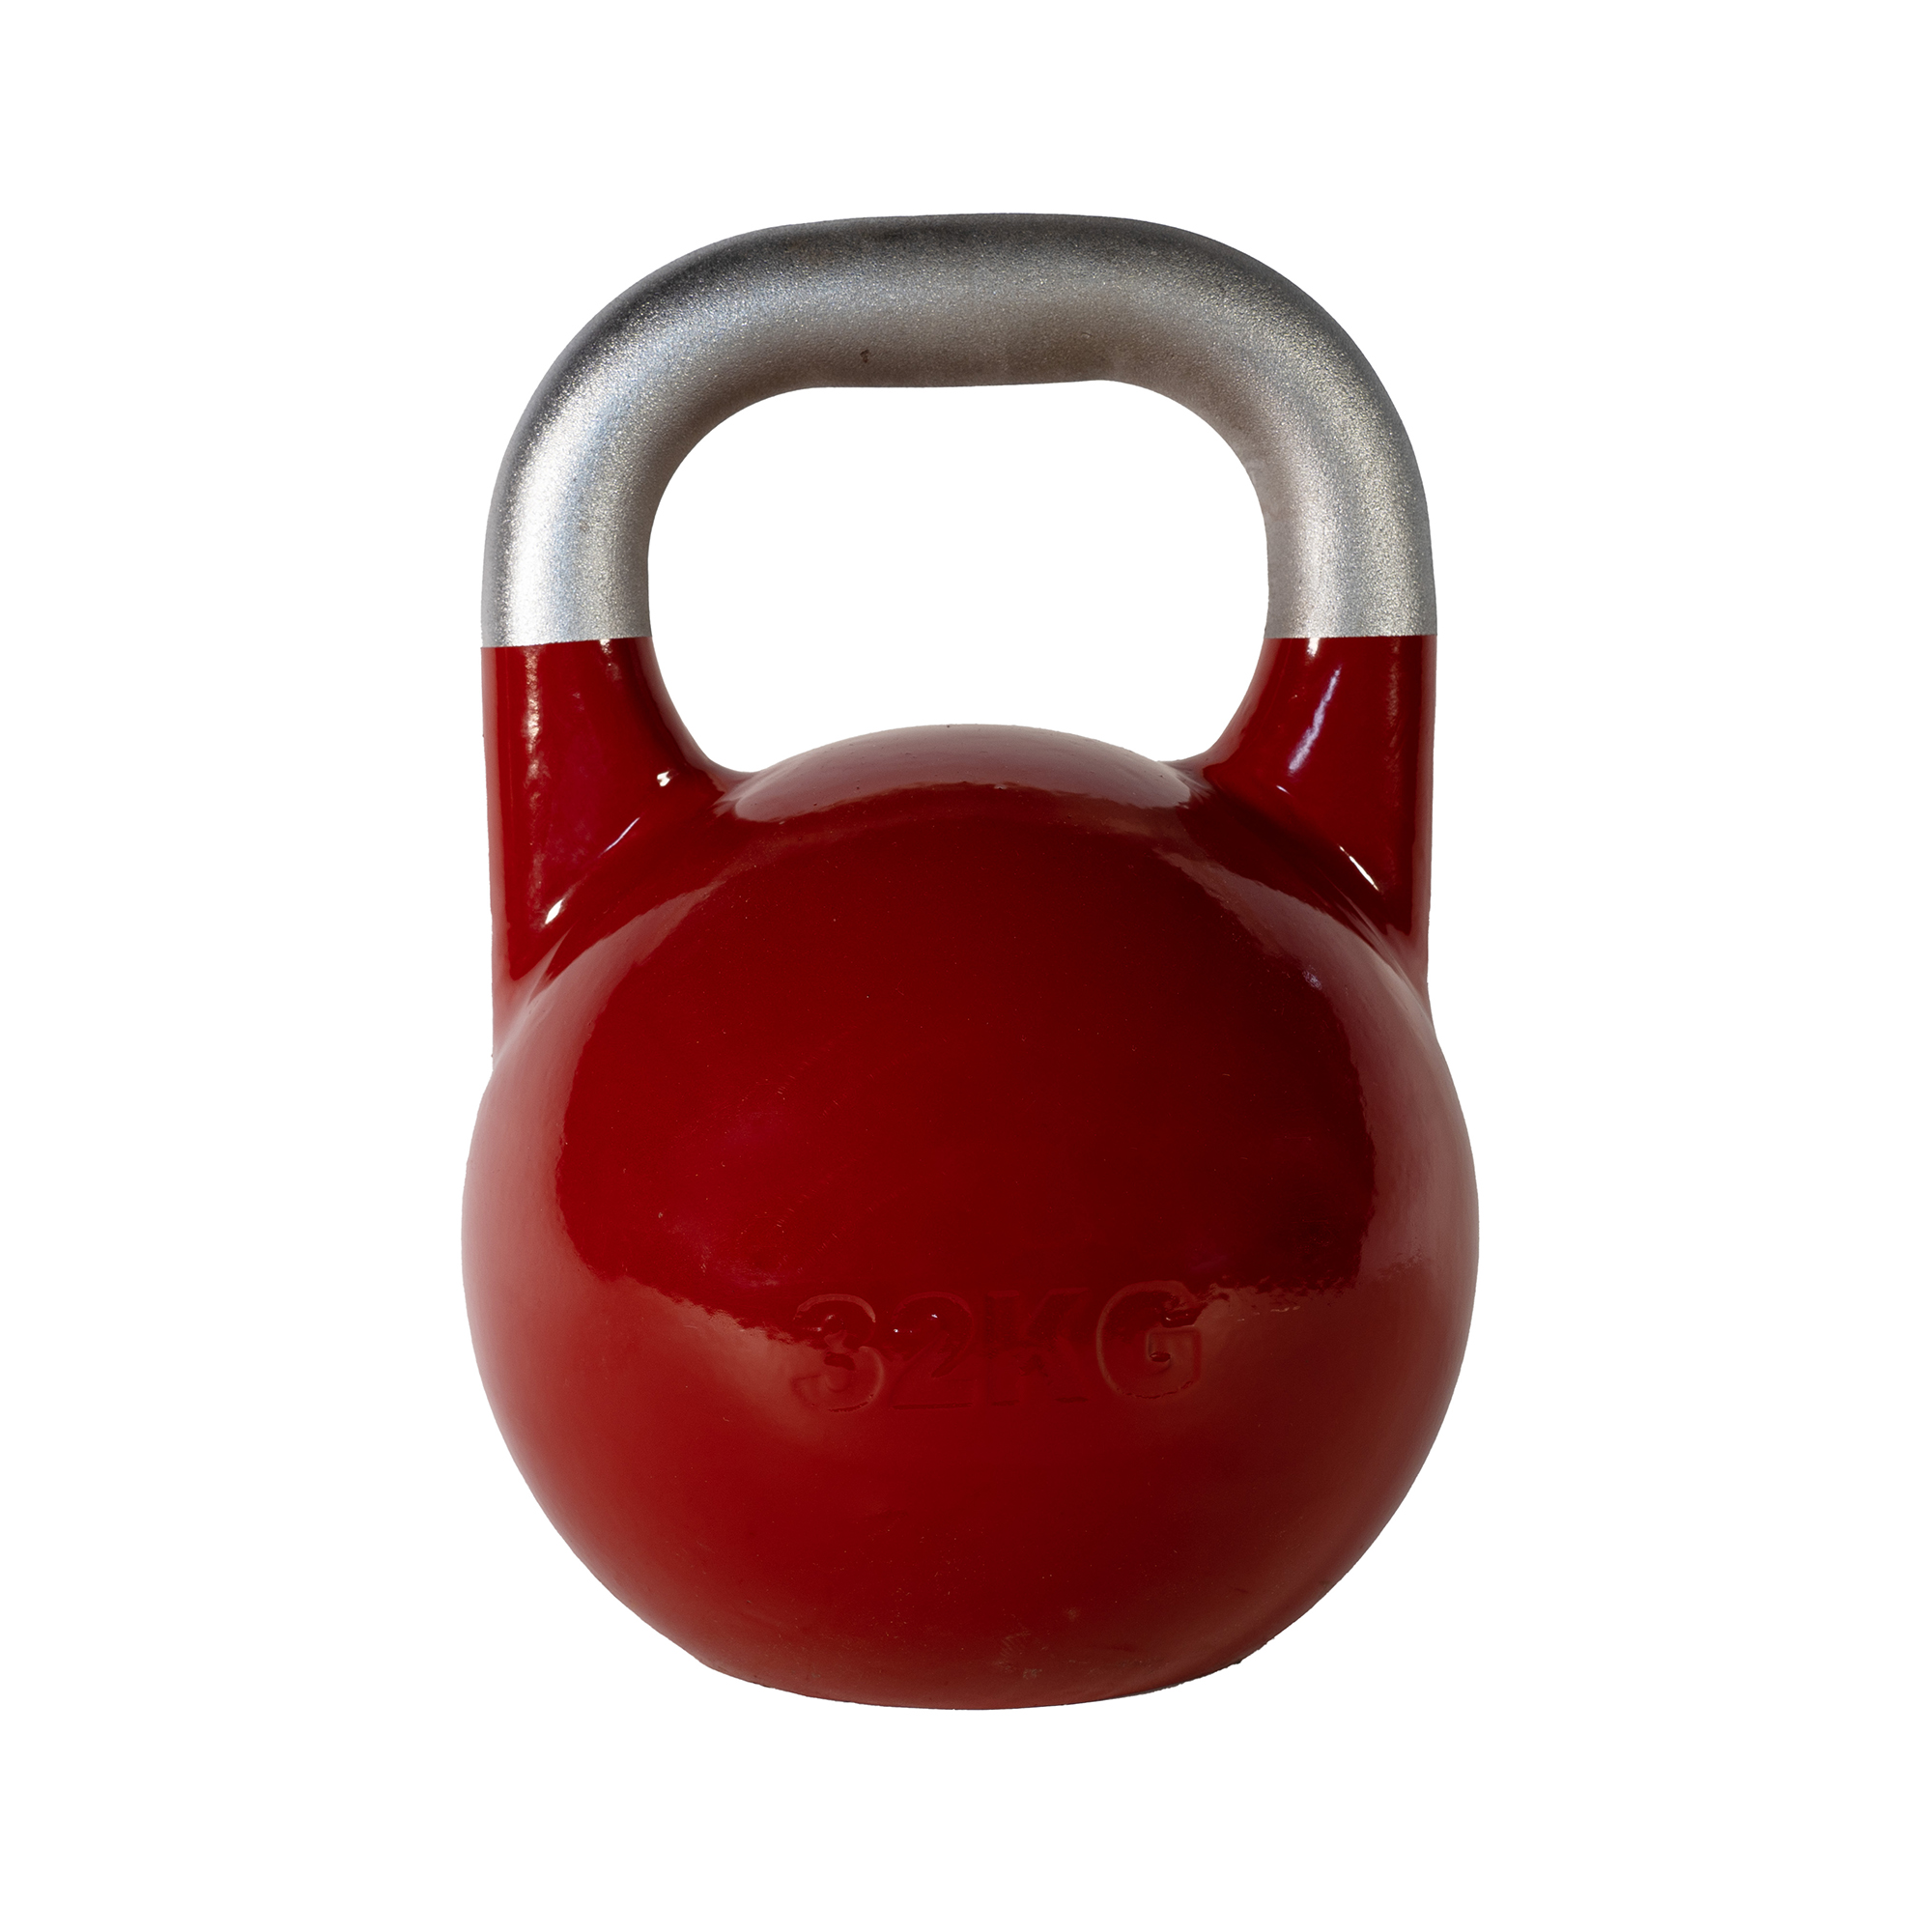 SQ&SN Competition Kettlebell (32 kg) i støbejern. Udstyr til crossfit træning, styrketræning og funktionel træning